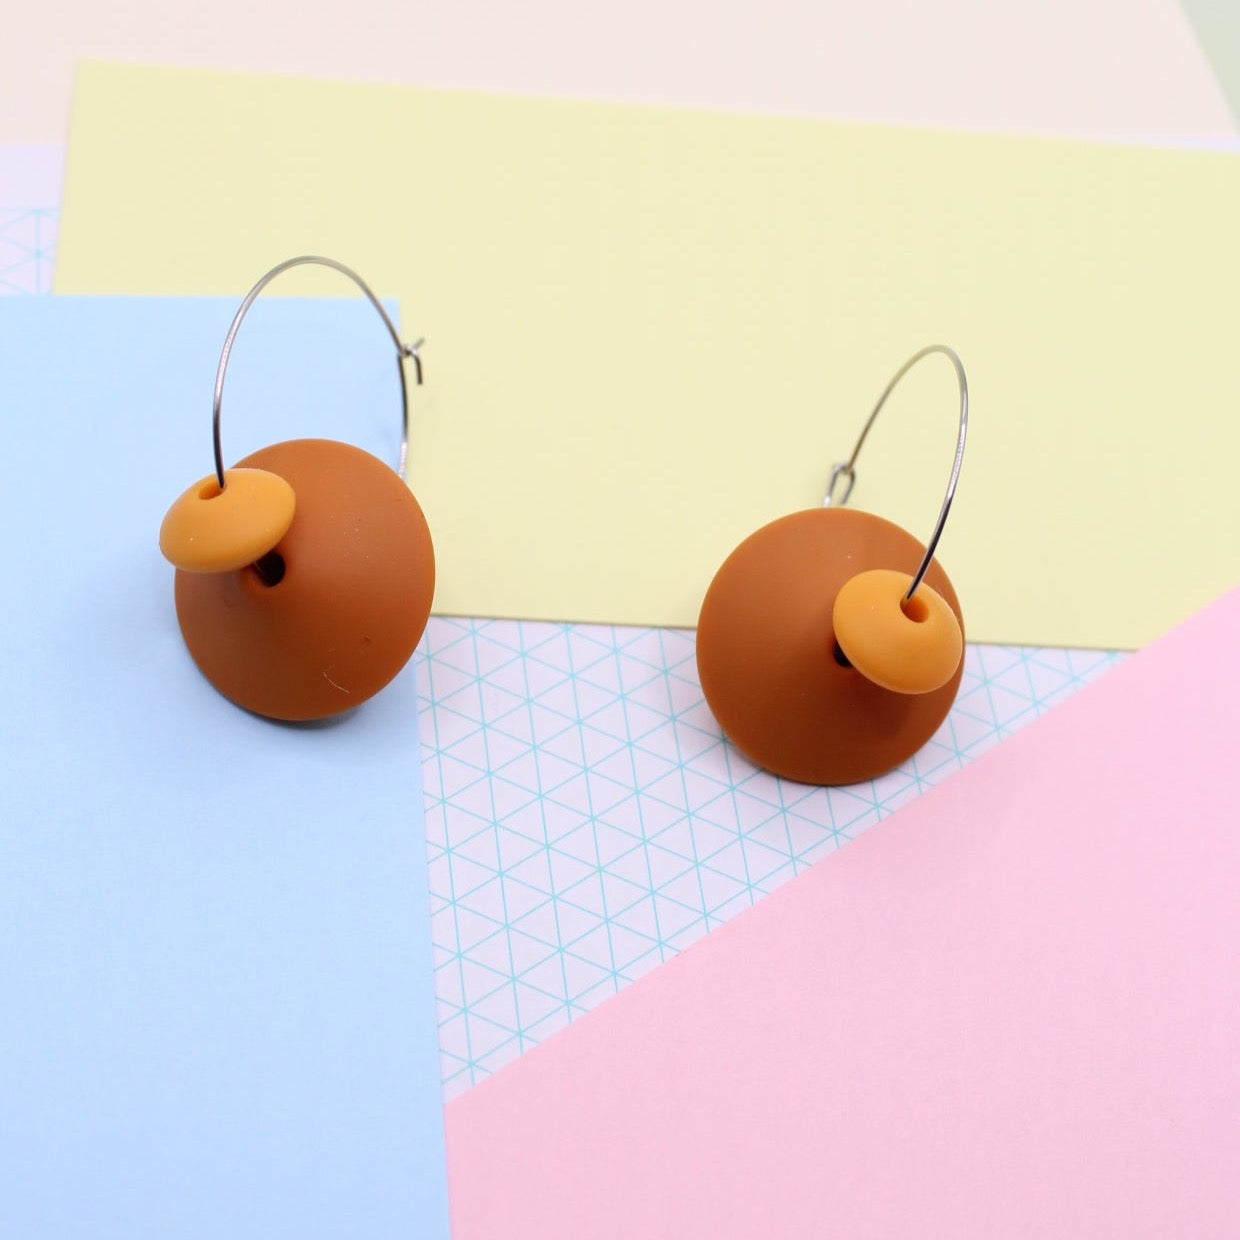 Statement Silicone Hoop Dangle Earrings - Burnt Orange, 30mm Hoops